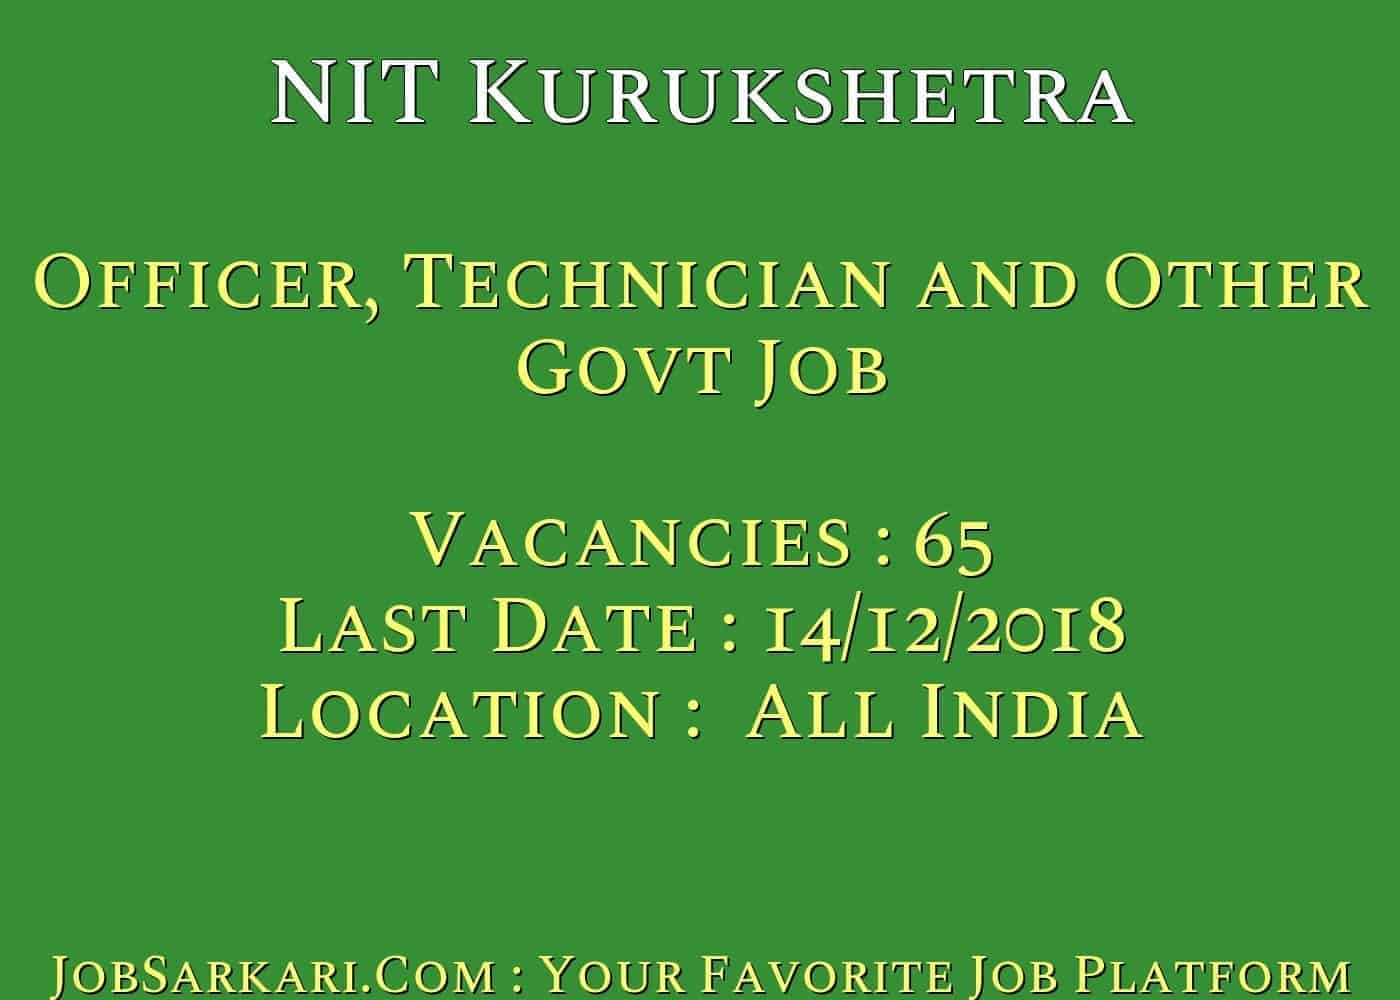 NIT Kurukshetra Recruitment 2018 for Officer, Technician and Other Govt Job